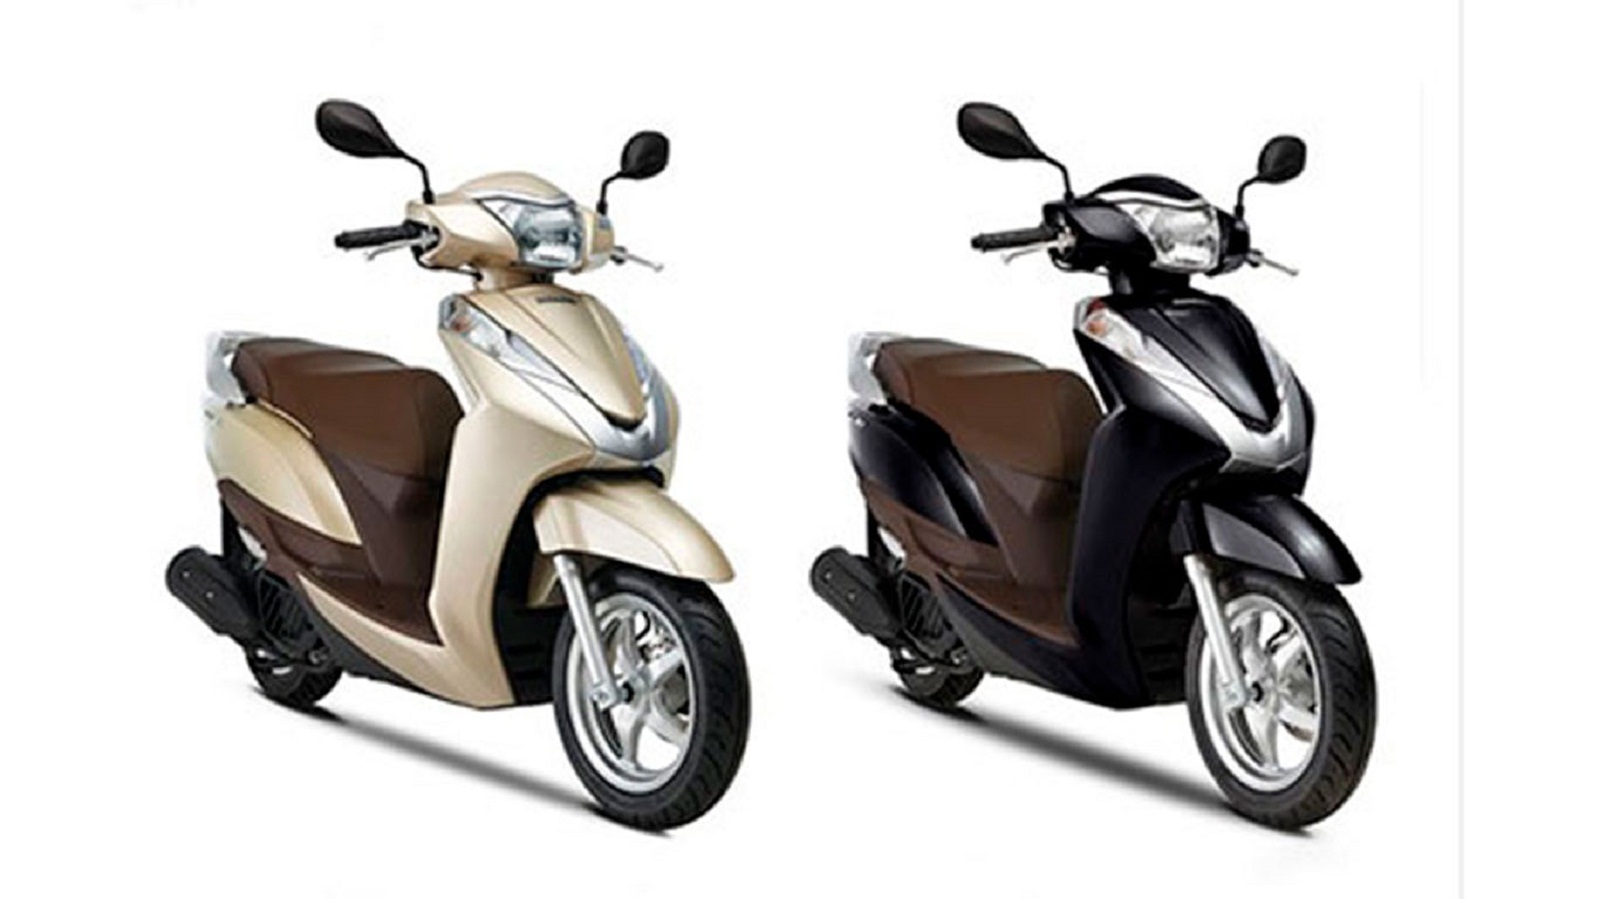 Cập nhật giá bán các mẫu xe máy Honda tại thị trường Việt - Ảnh 3.